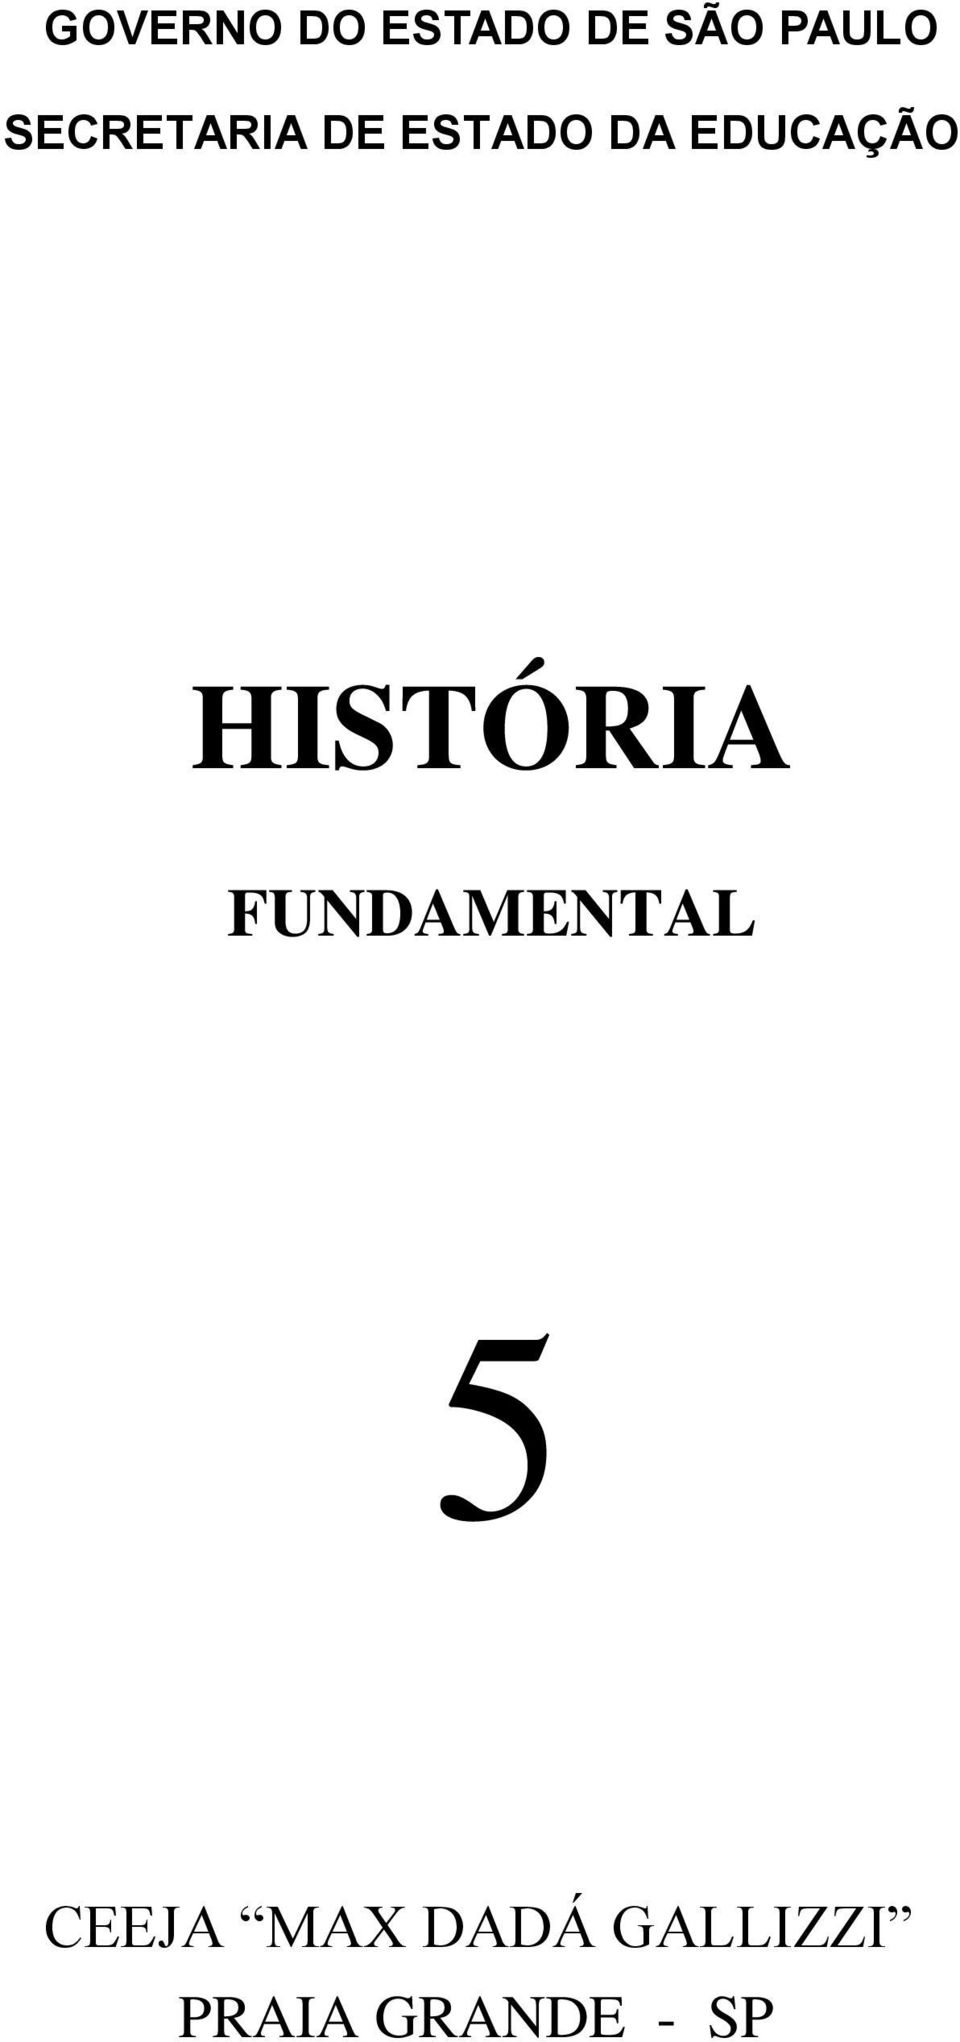 EDUCAÇÃO HISTÓRIA FUNDAMENTAL 5